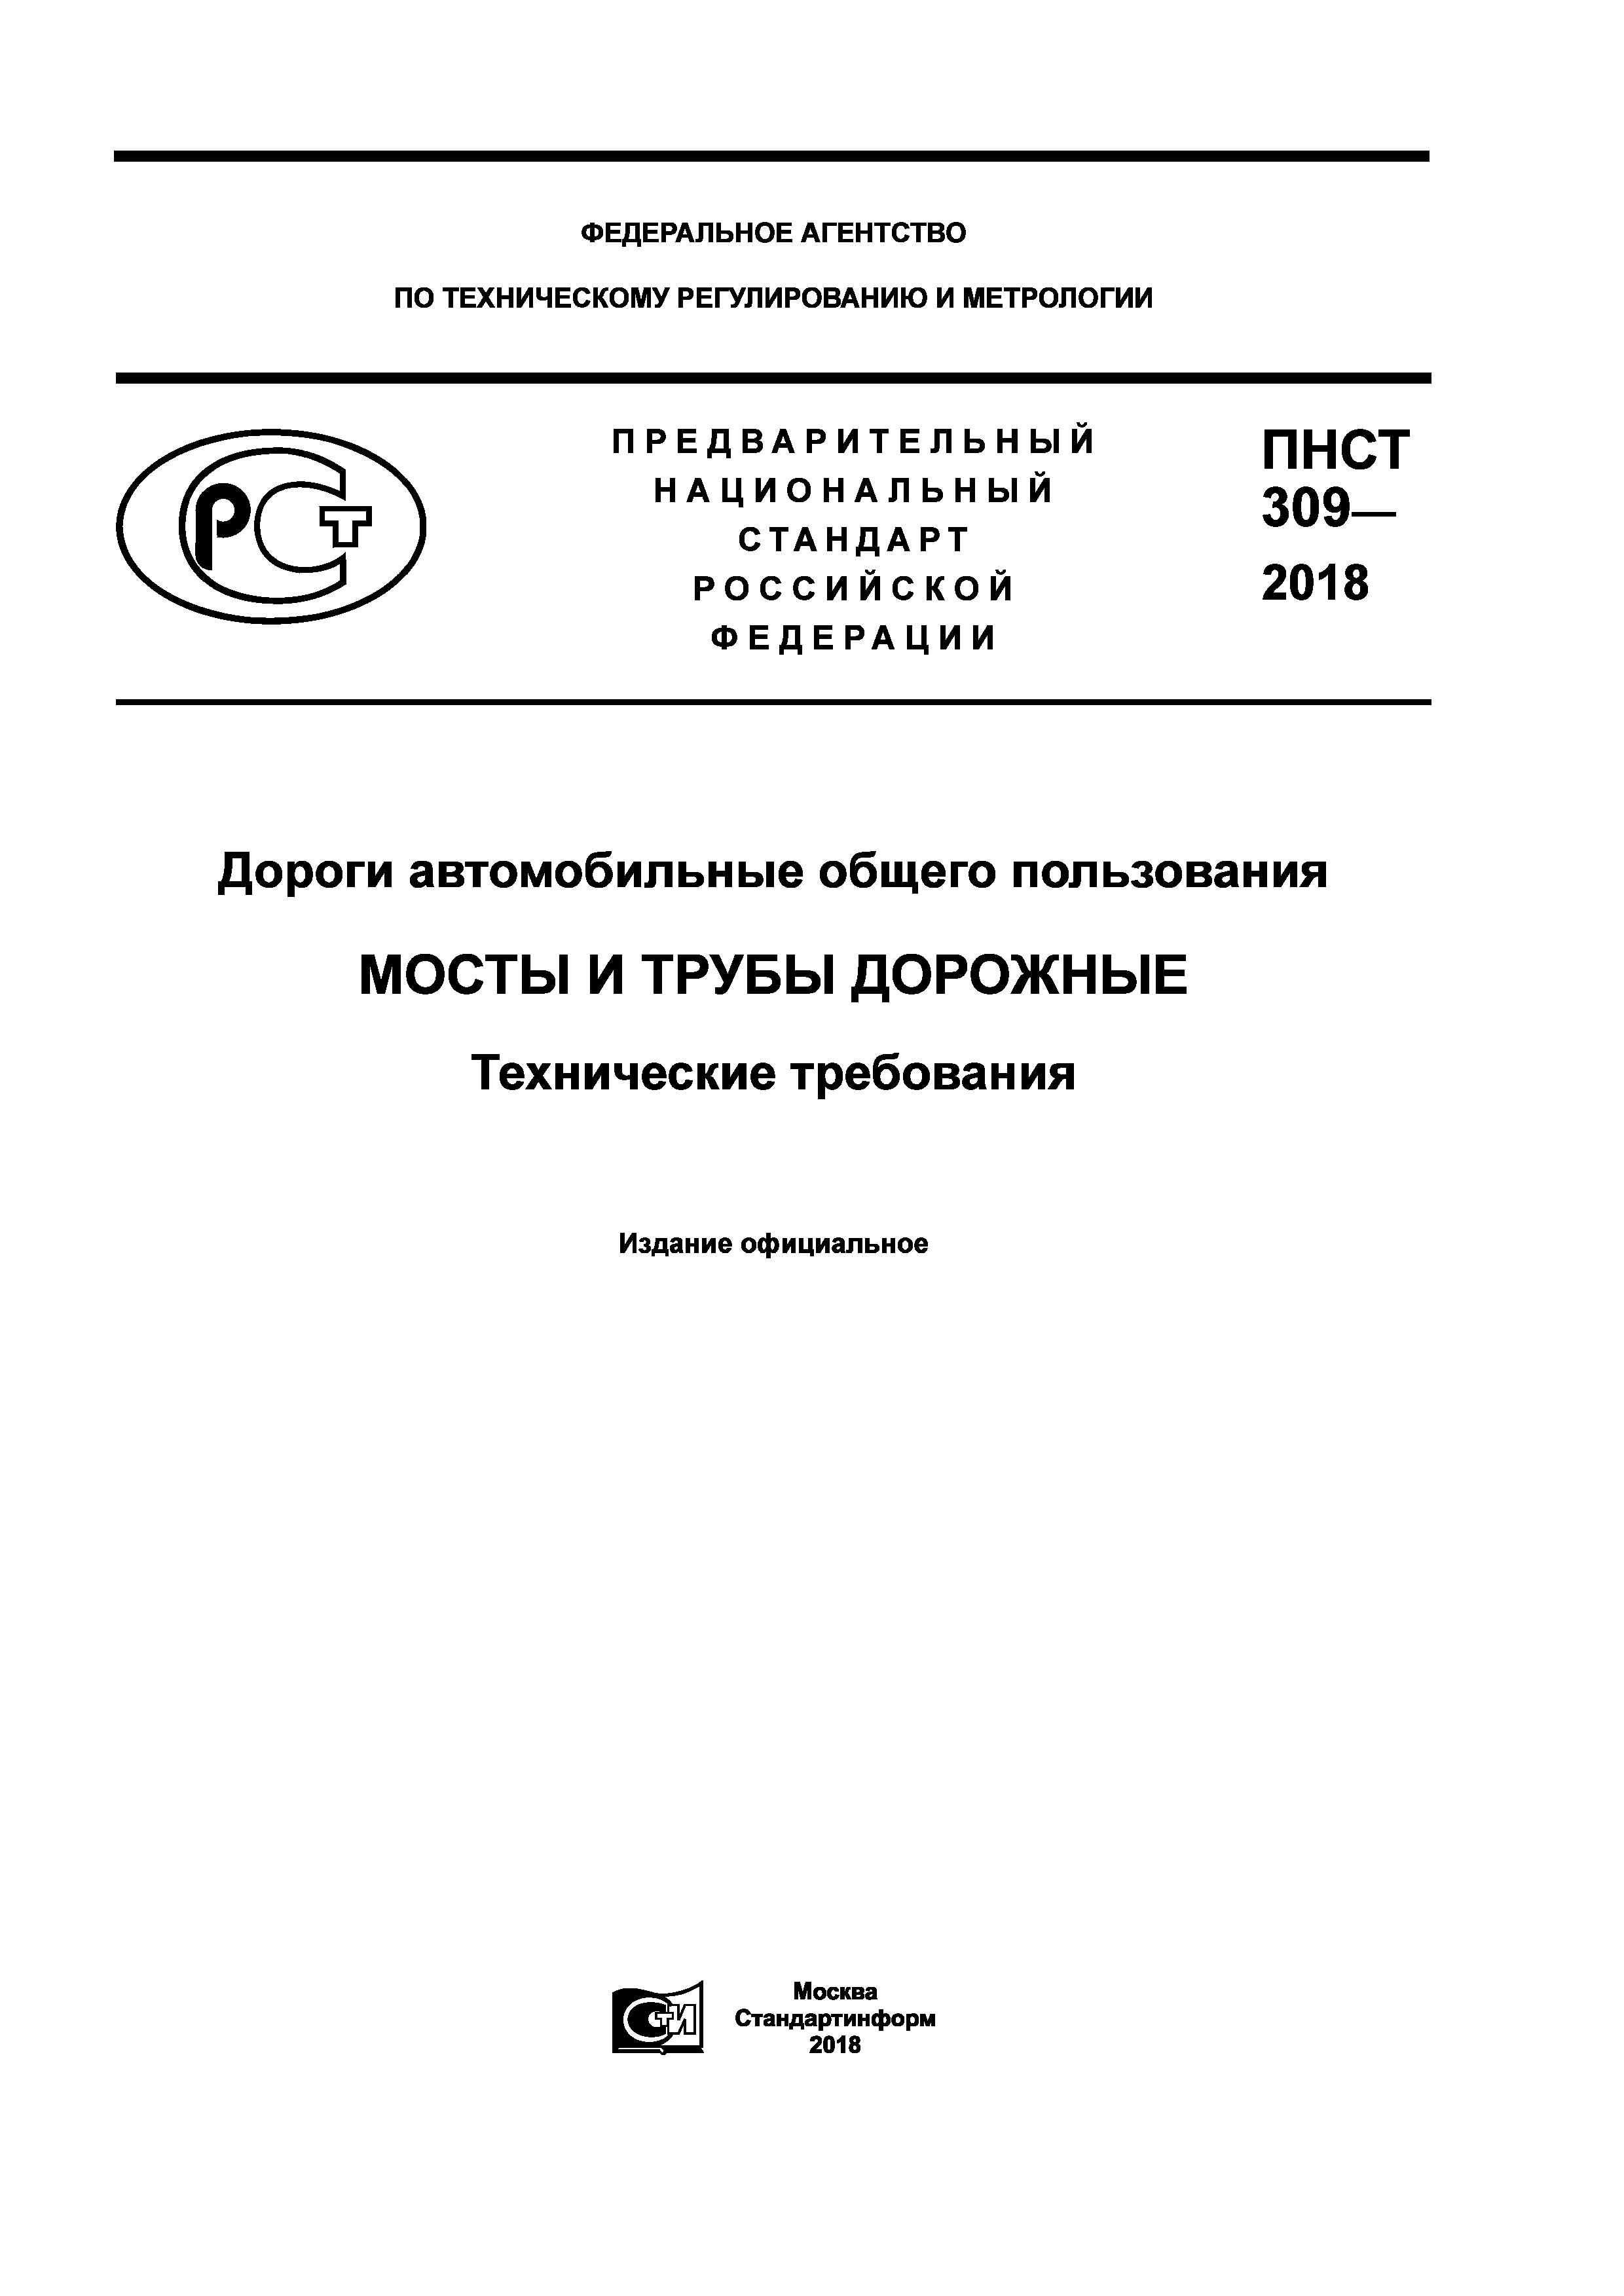 ПНСТ 309-2018